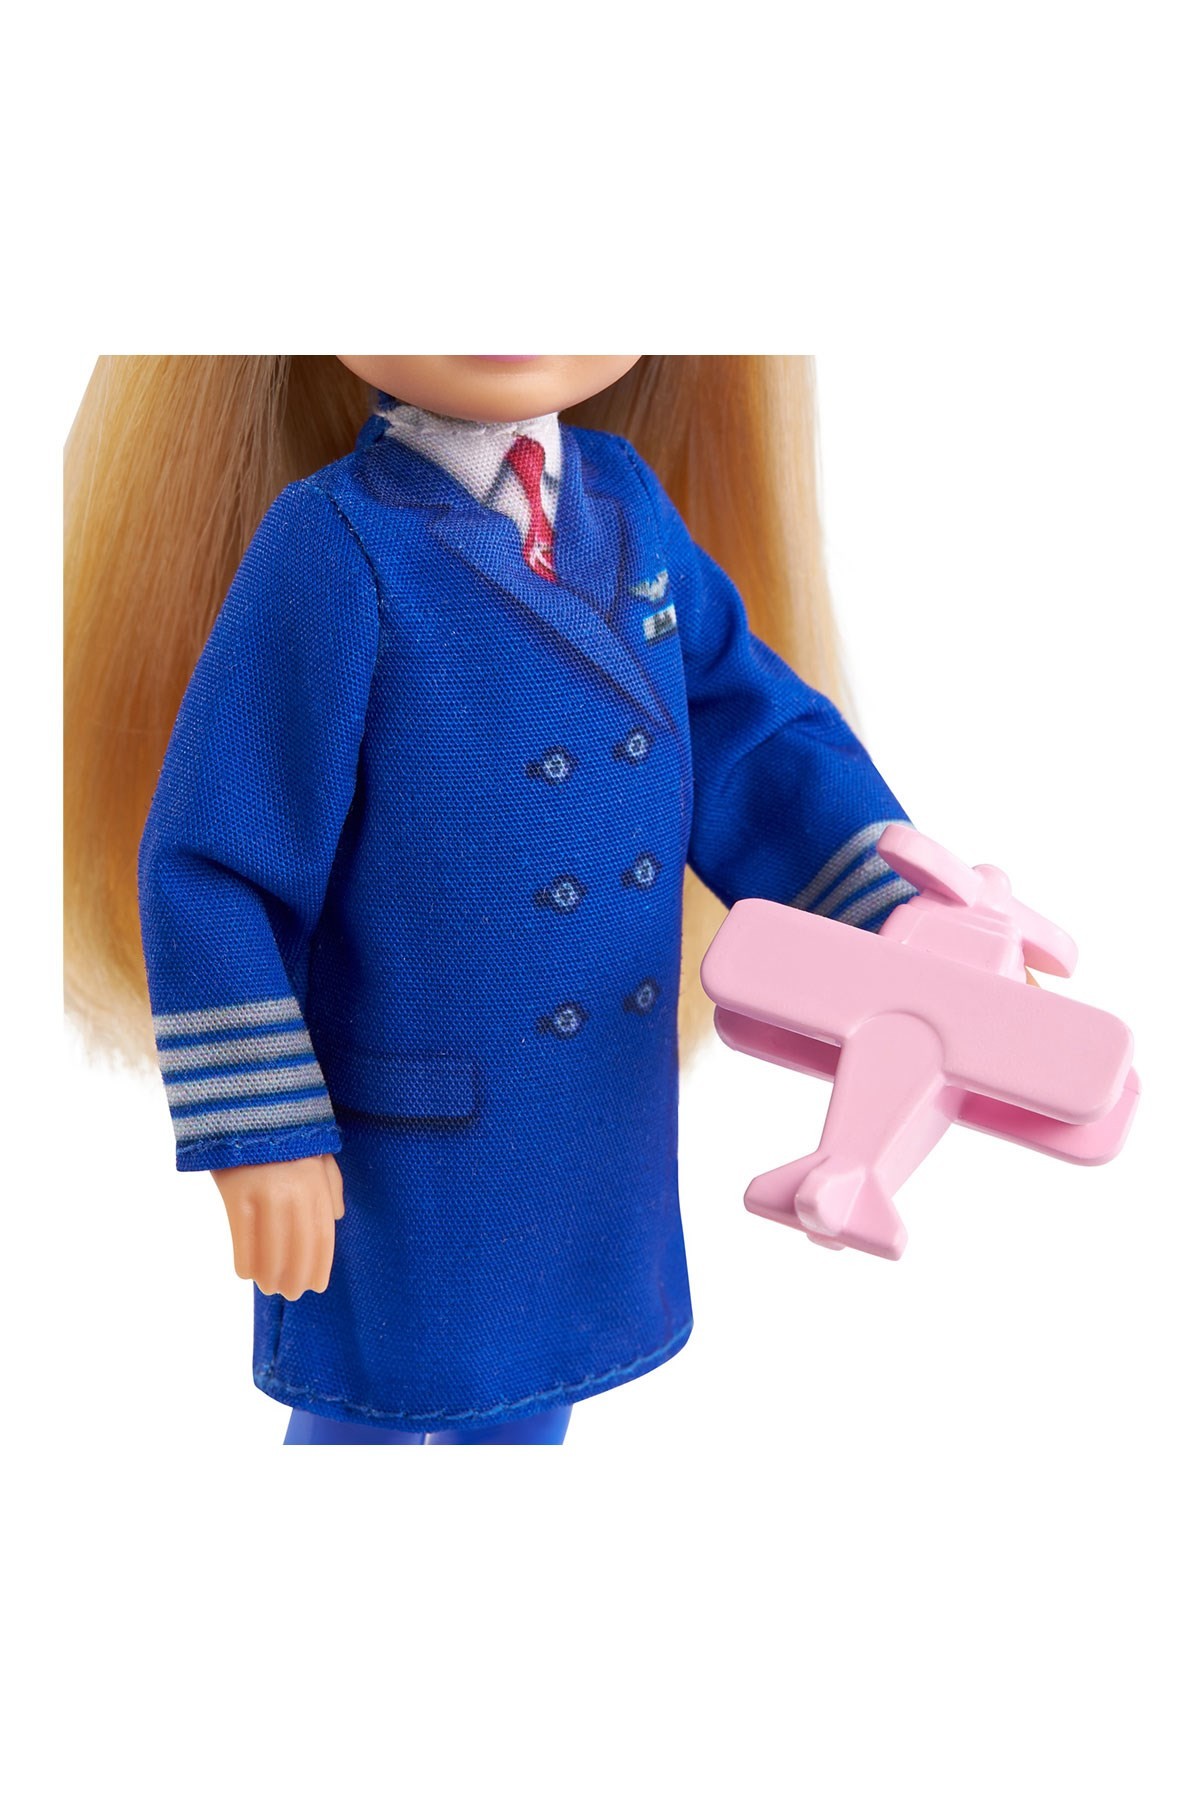 Barbie Chelsea Meslekleri Öğreniyor Bebek Serisi Pilot GTN90